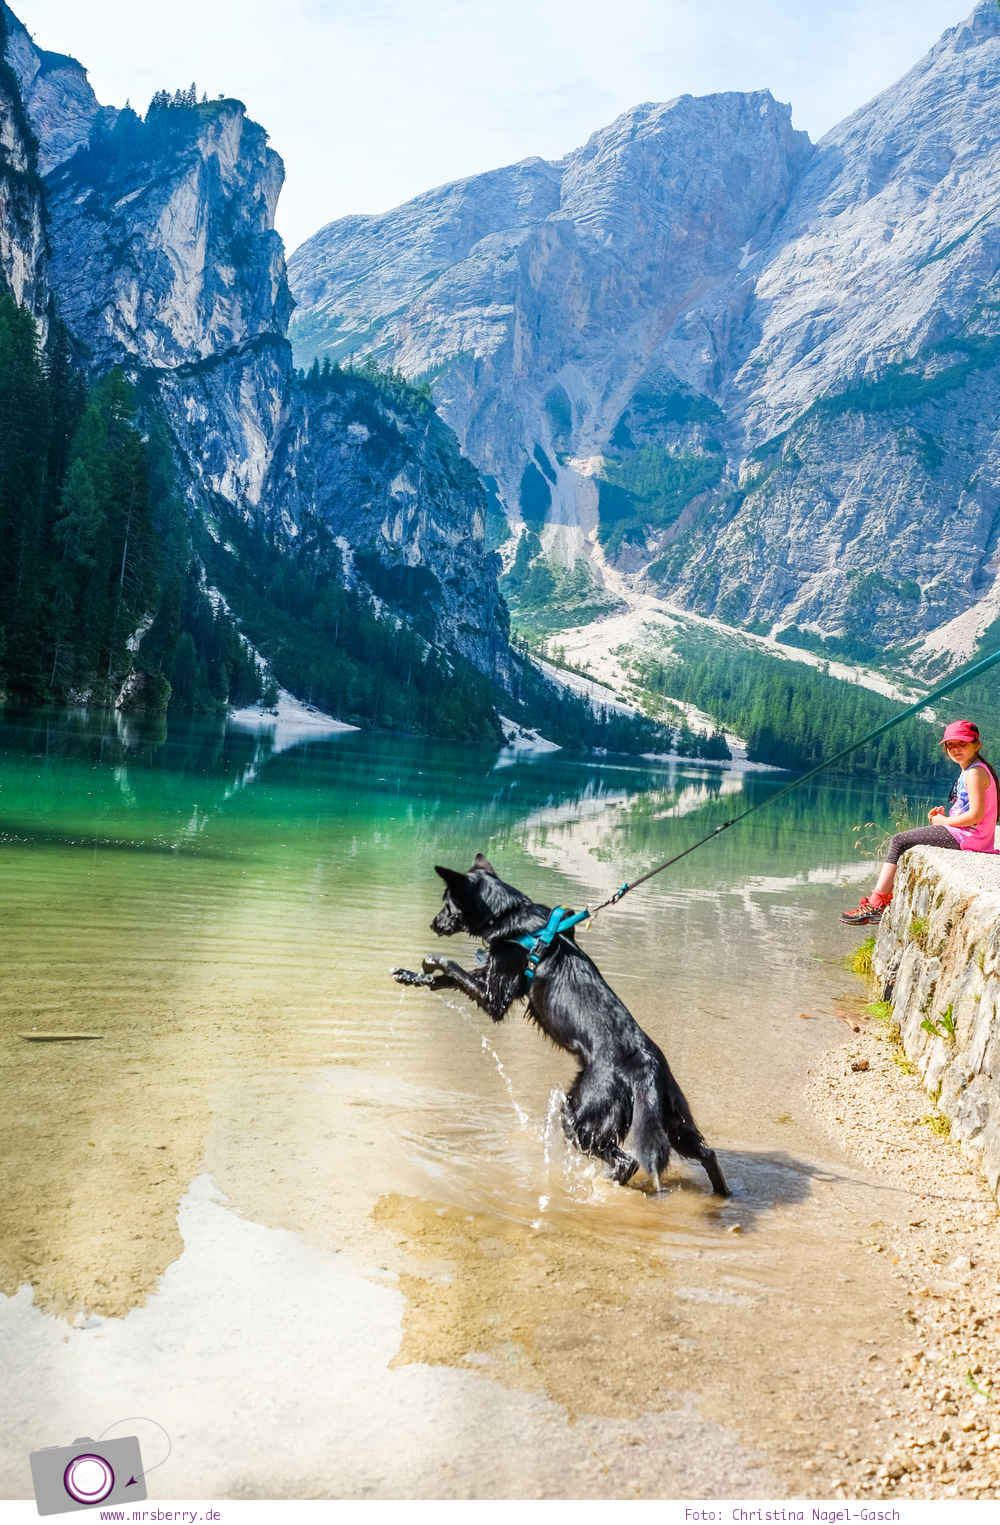 Familienurlaub in Südtirol in der Dolomitenregion Drei Zinnen: Ausflug zum Pragser Wildsee